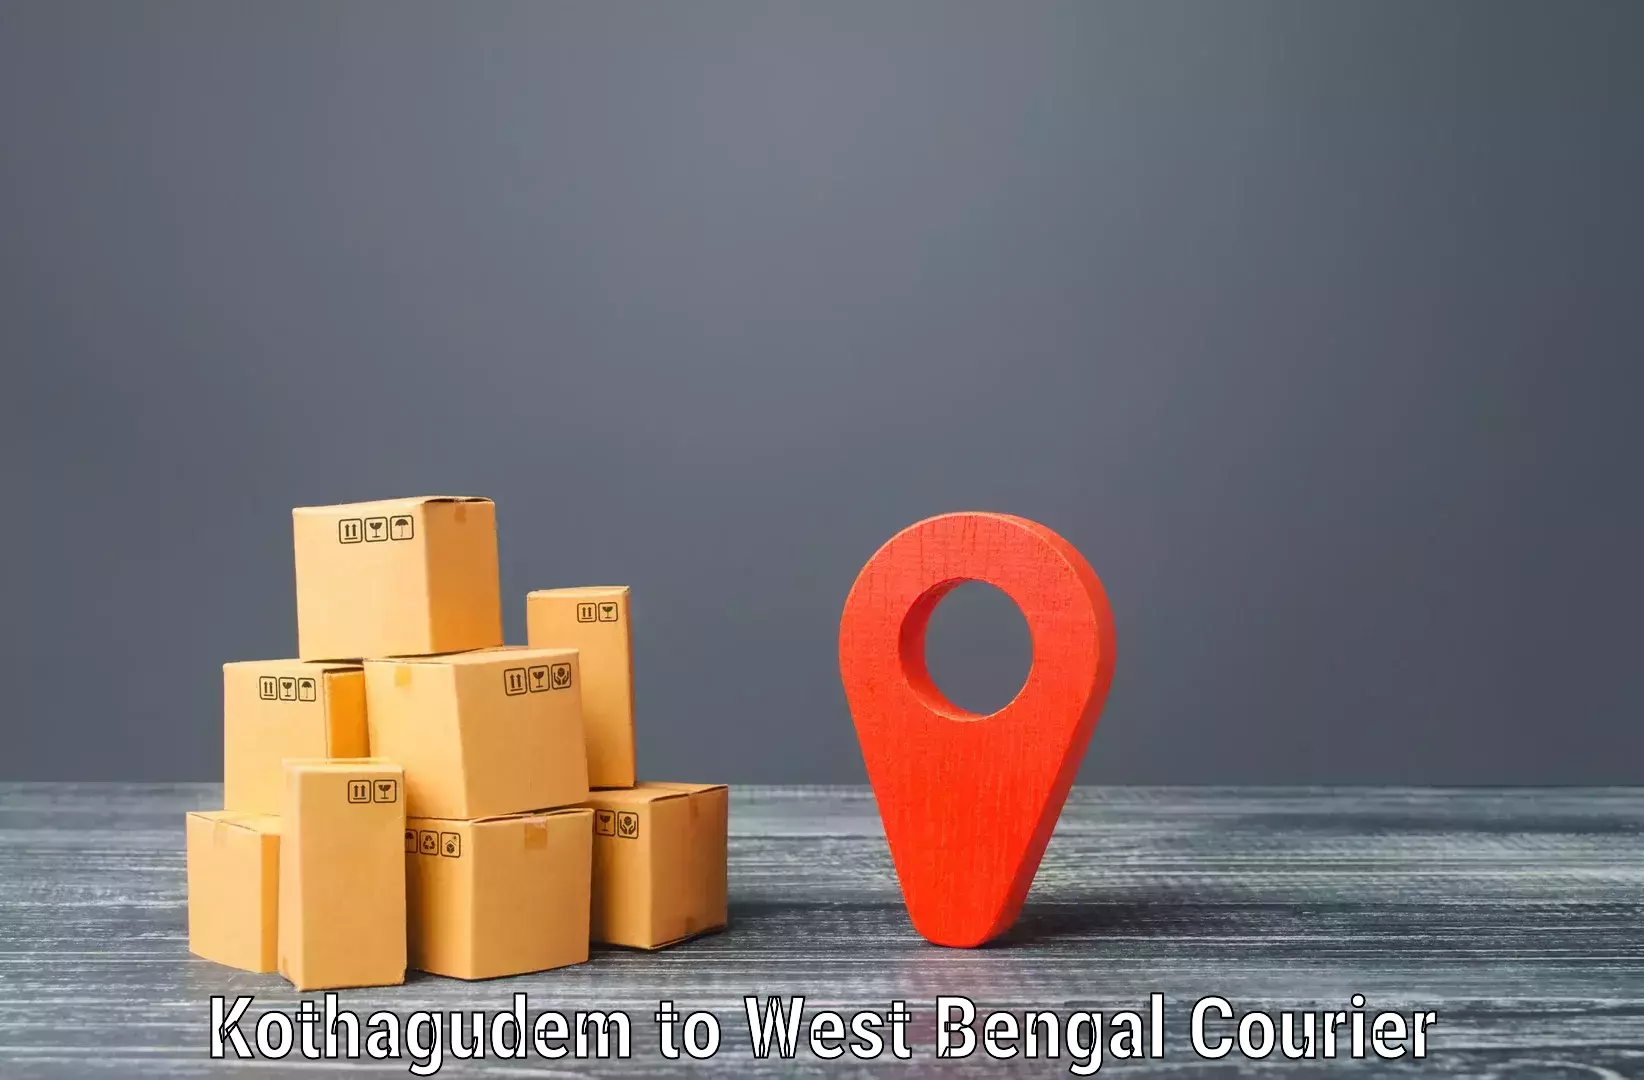 Multi-national courier services Kothagudem to Belda